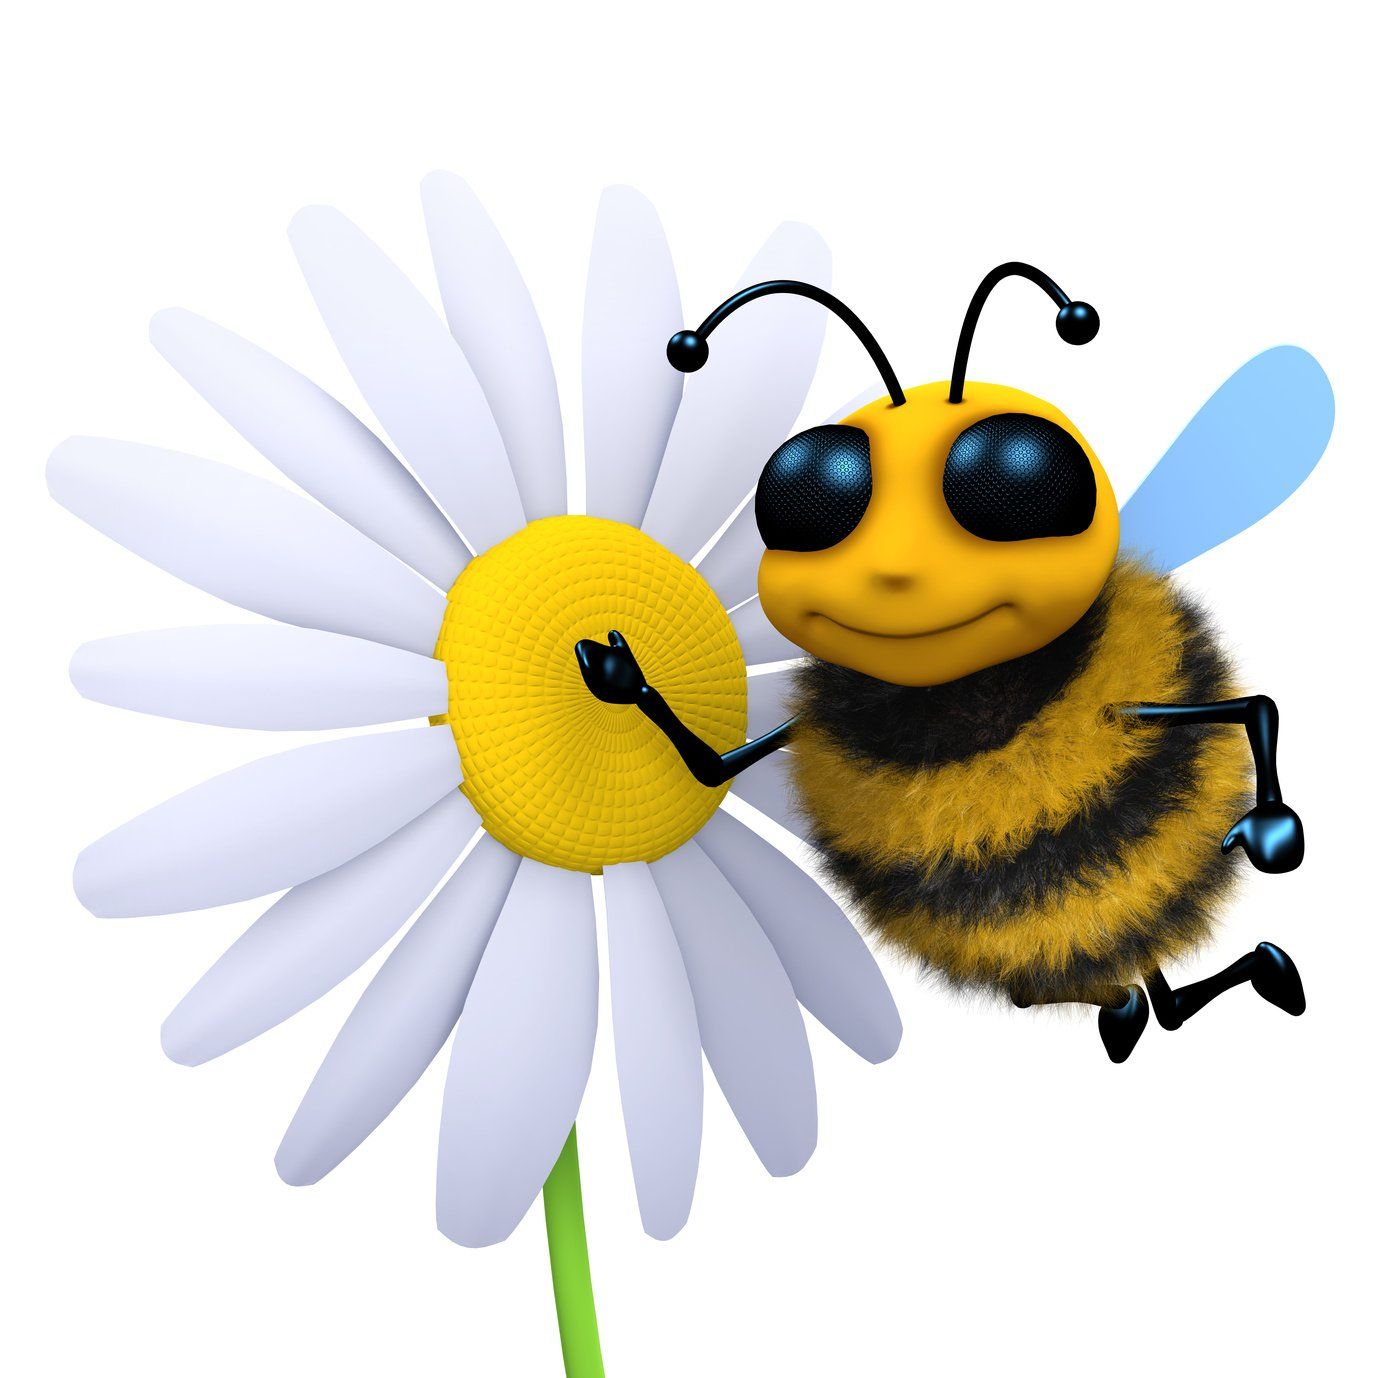 Das bin ICH - ein AAA-neugieriges Wissens-Bienchen